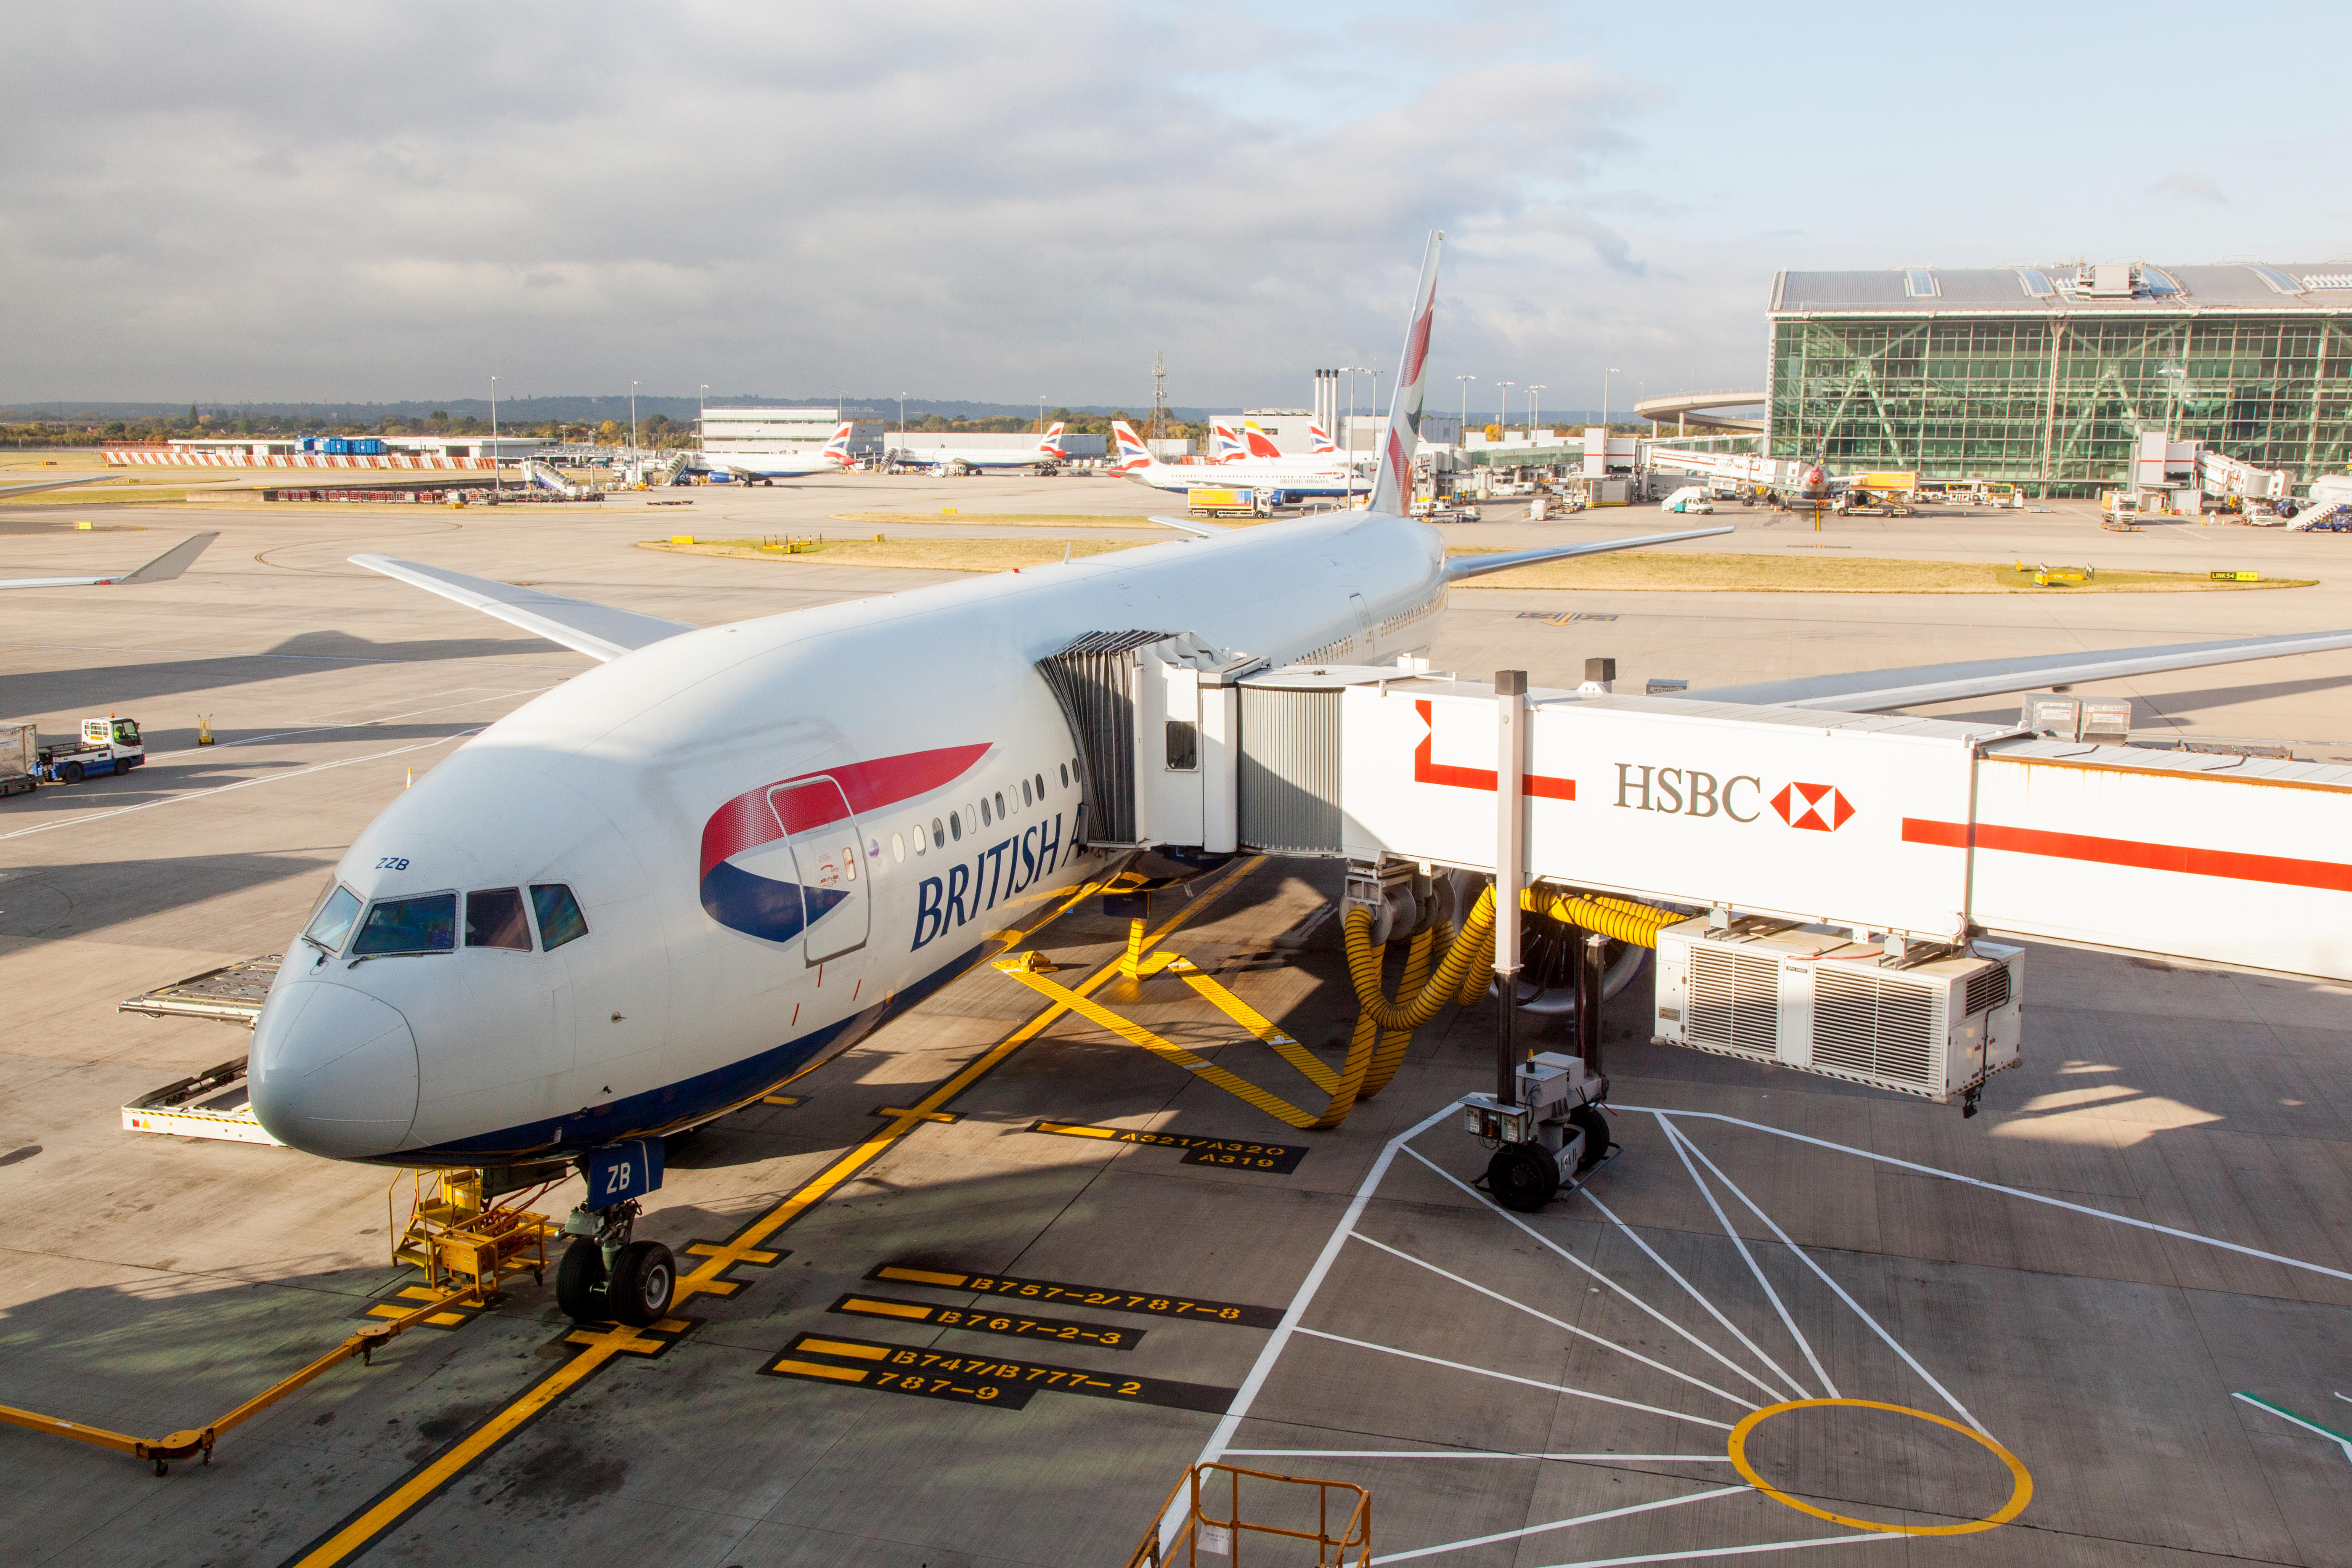 A British Airways plane at Heathrow